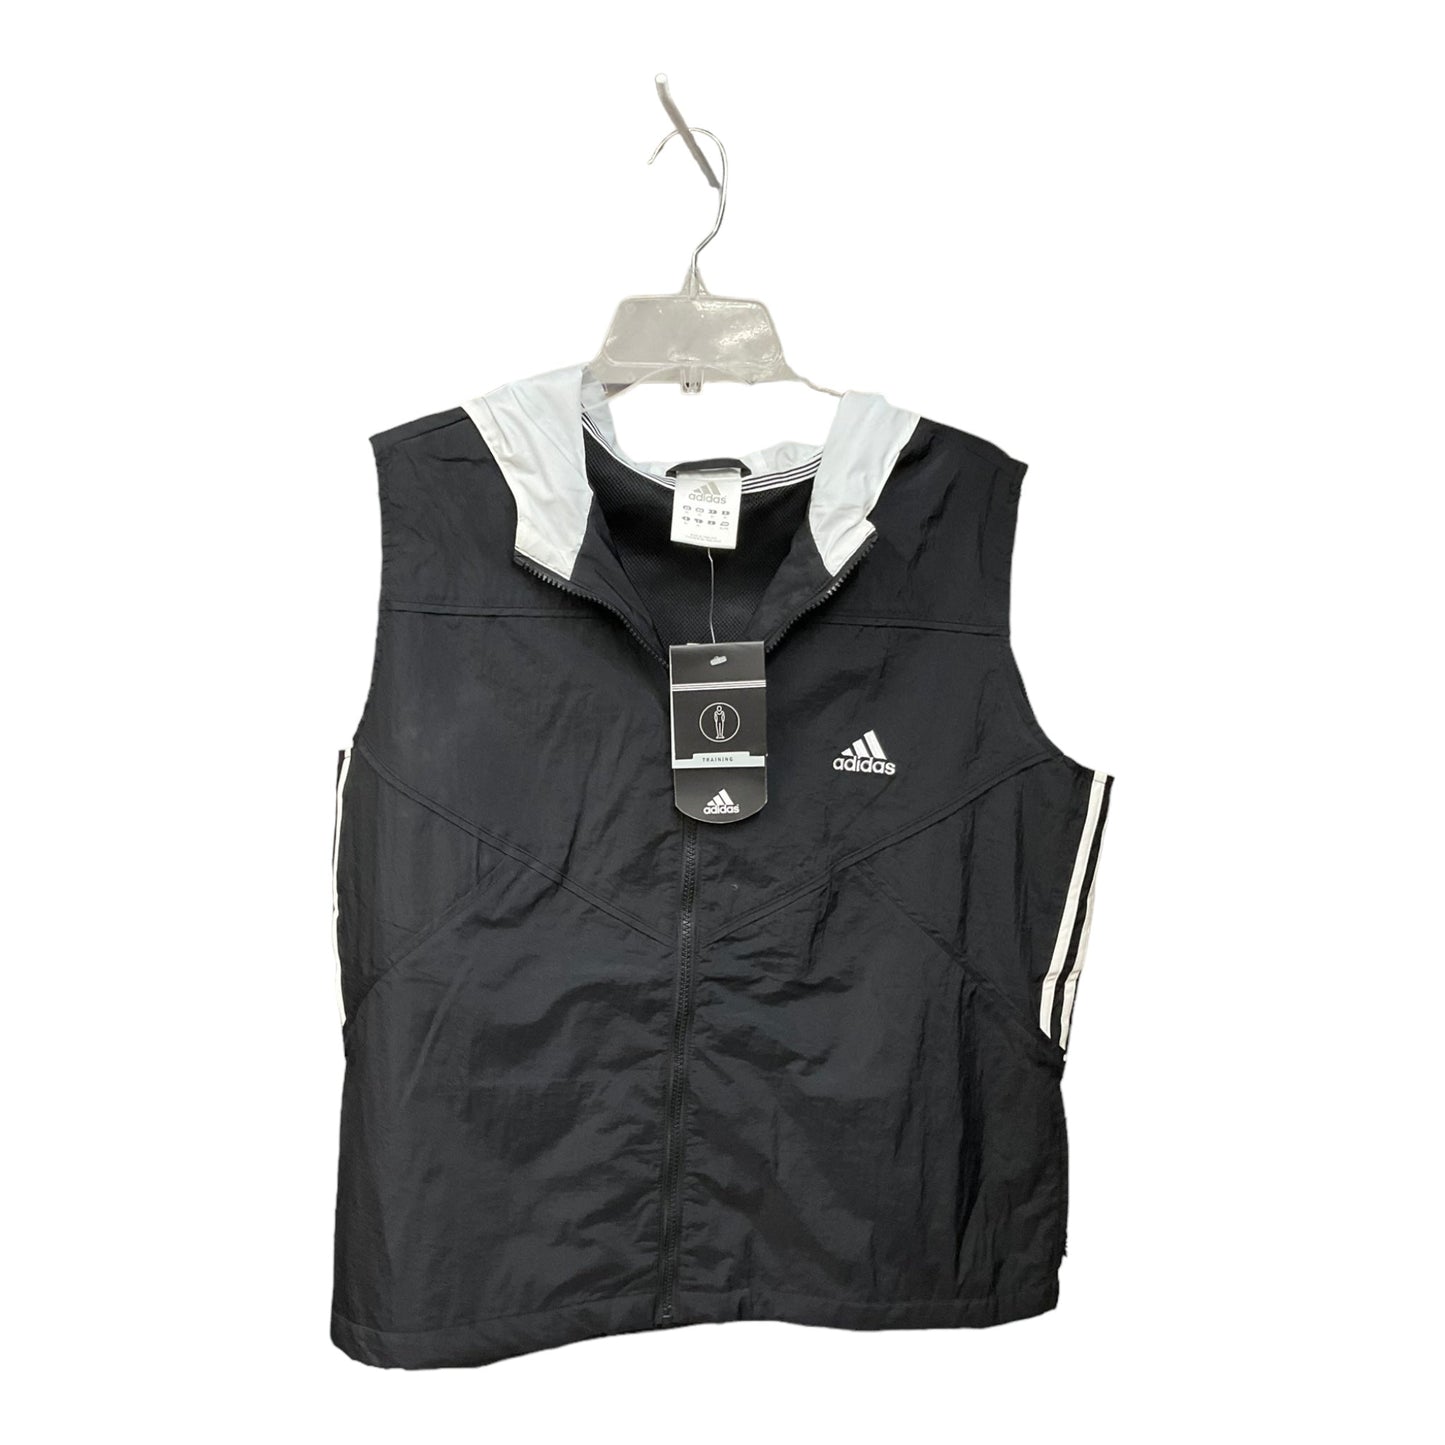 Black Athletic Jacket Adidas, Size Xl